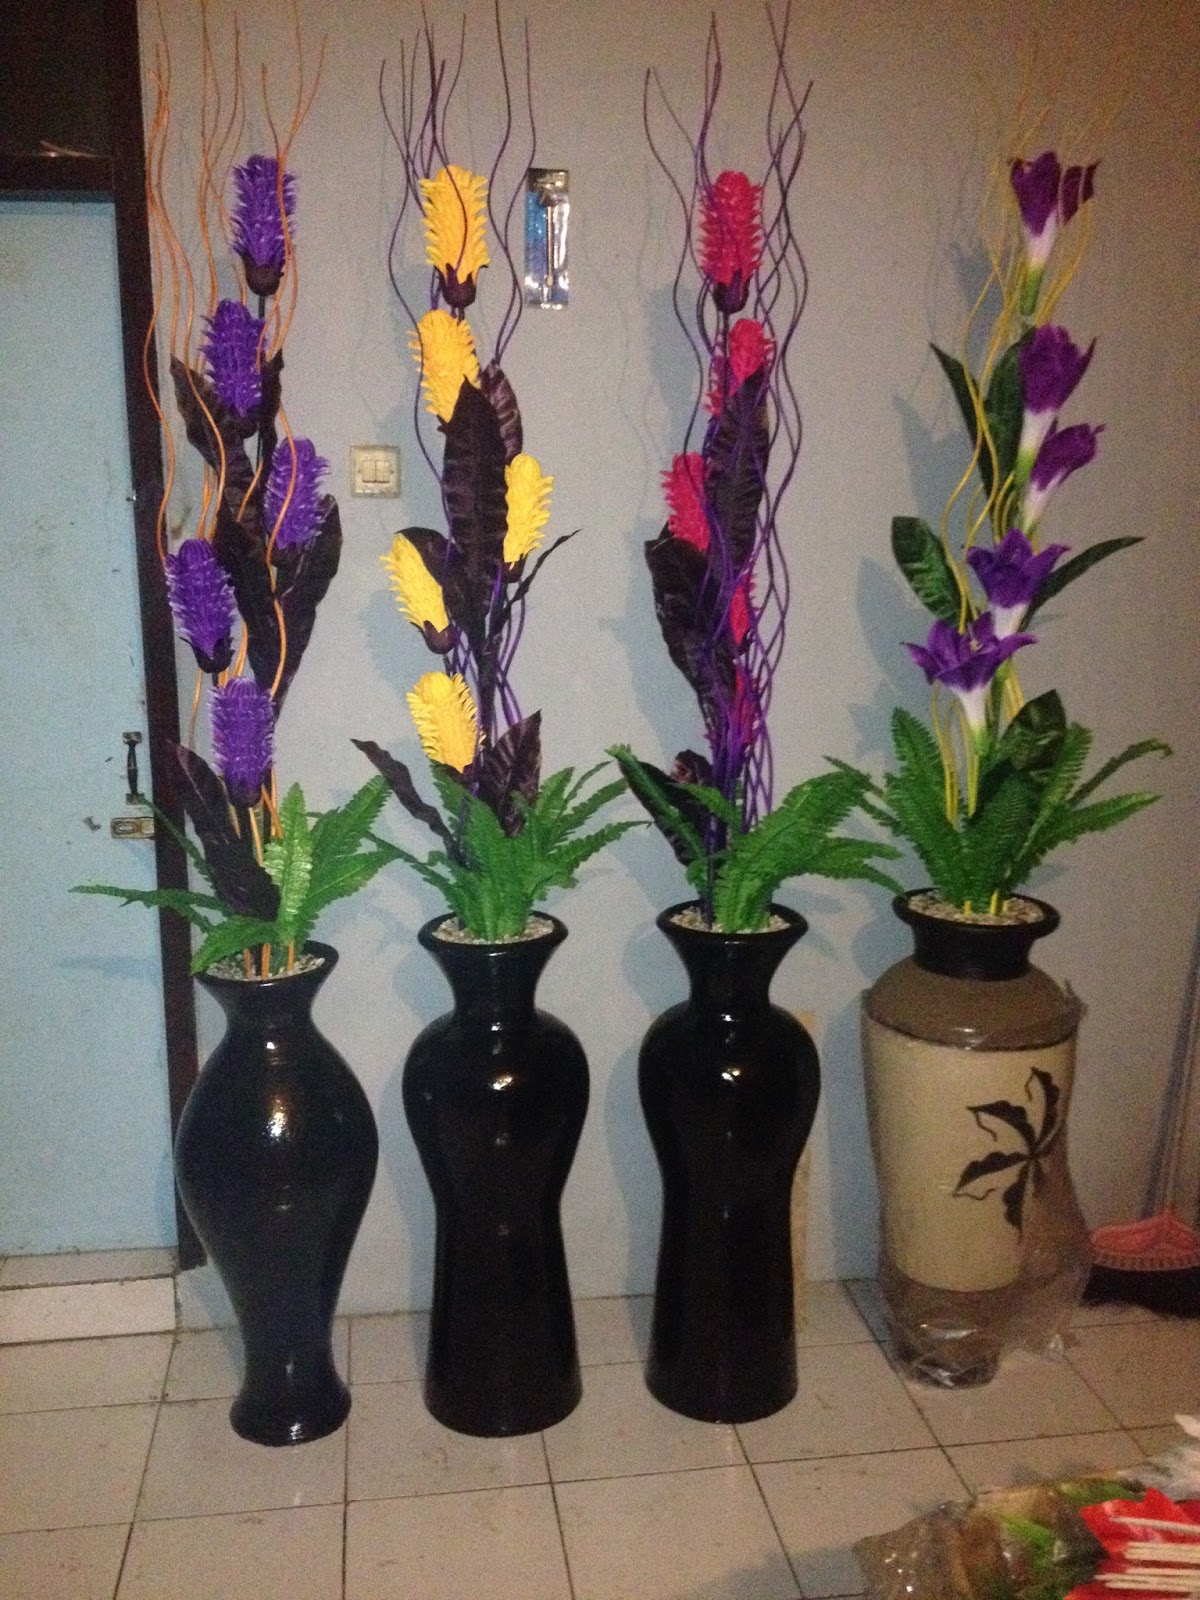  Jual  Tanaman Vas Bunga  Hias Bonsai Daerah Kuningan Cirebon  